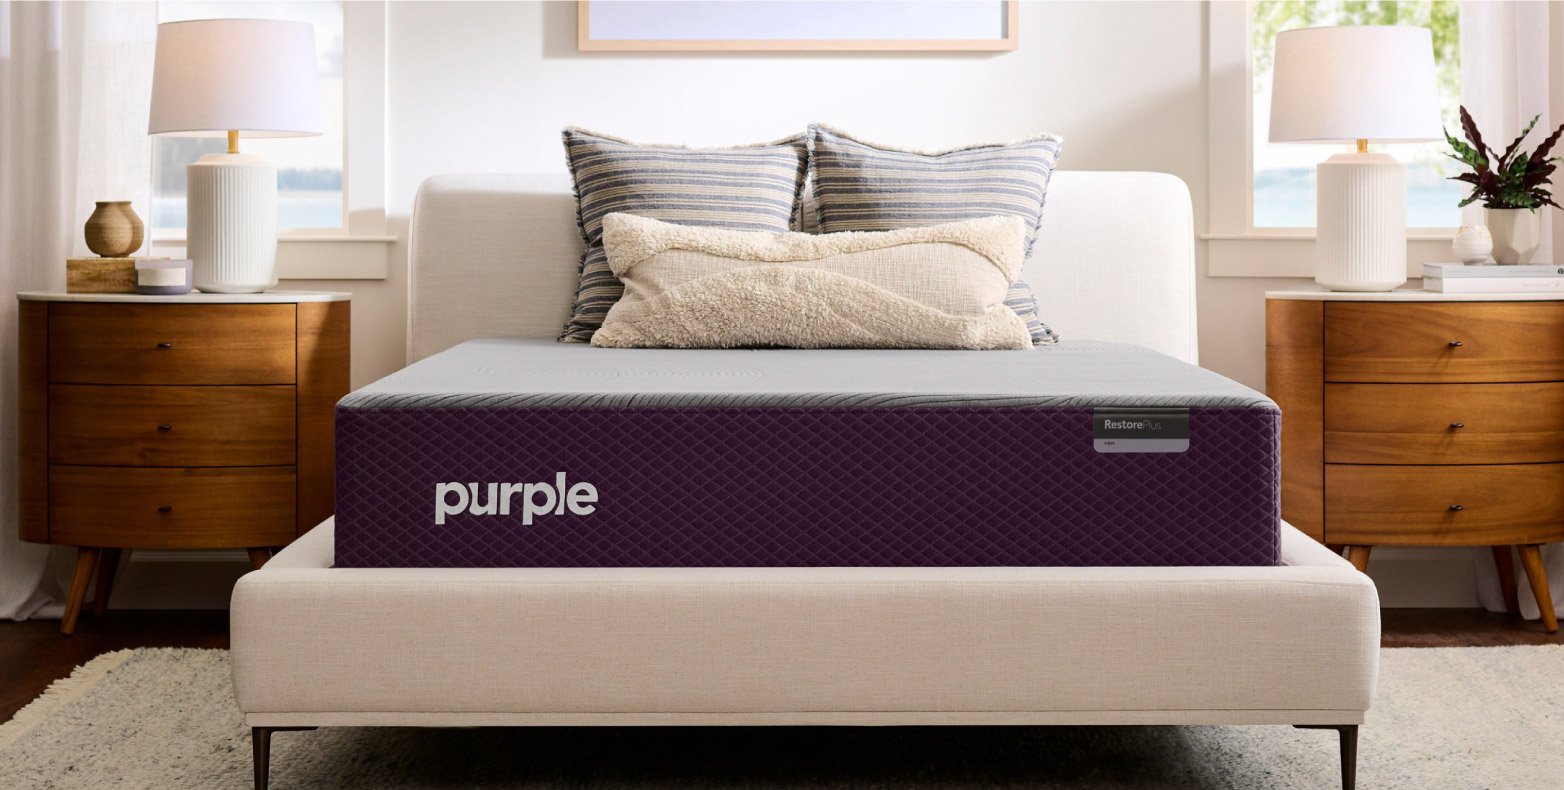 Purple RestorePlus™ Hybrid Mattress in a bedroom.